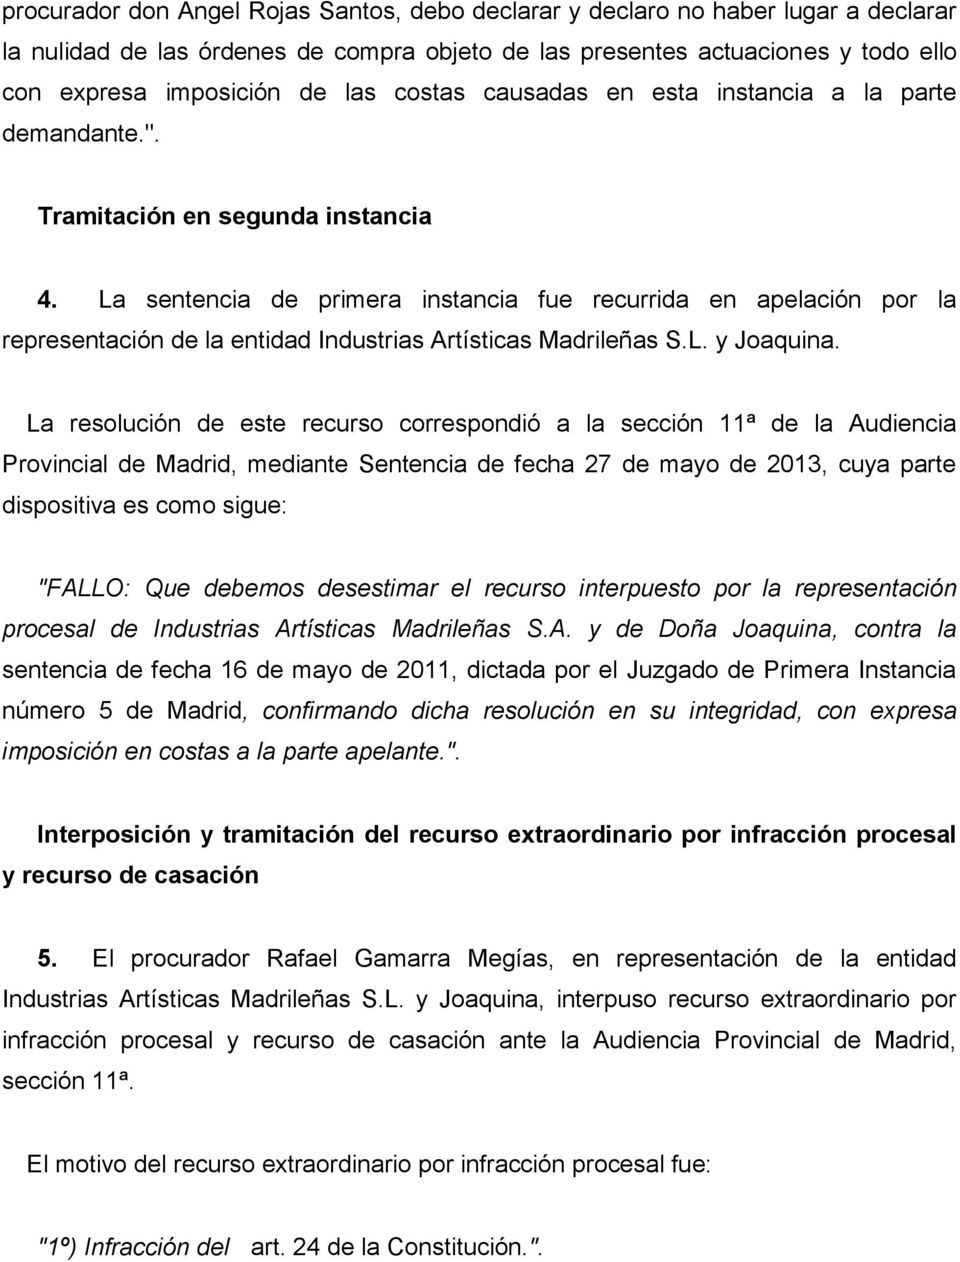 La sentencia de primera instancia fue recurrida en apelación por la representación de la entidad Industrias Artísticas Madrileñas S.L. y Joaquina.